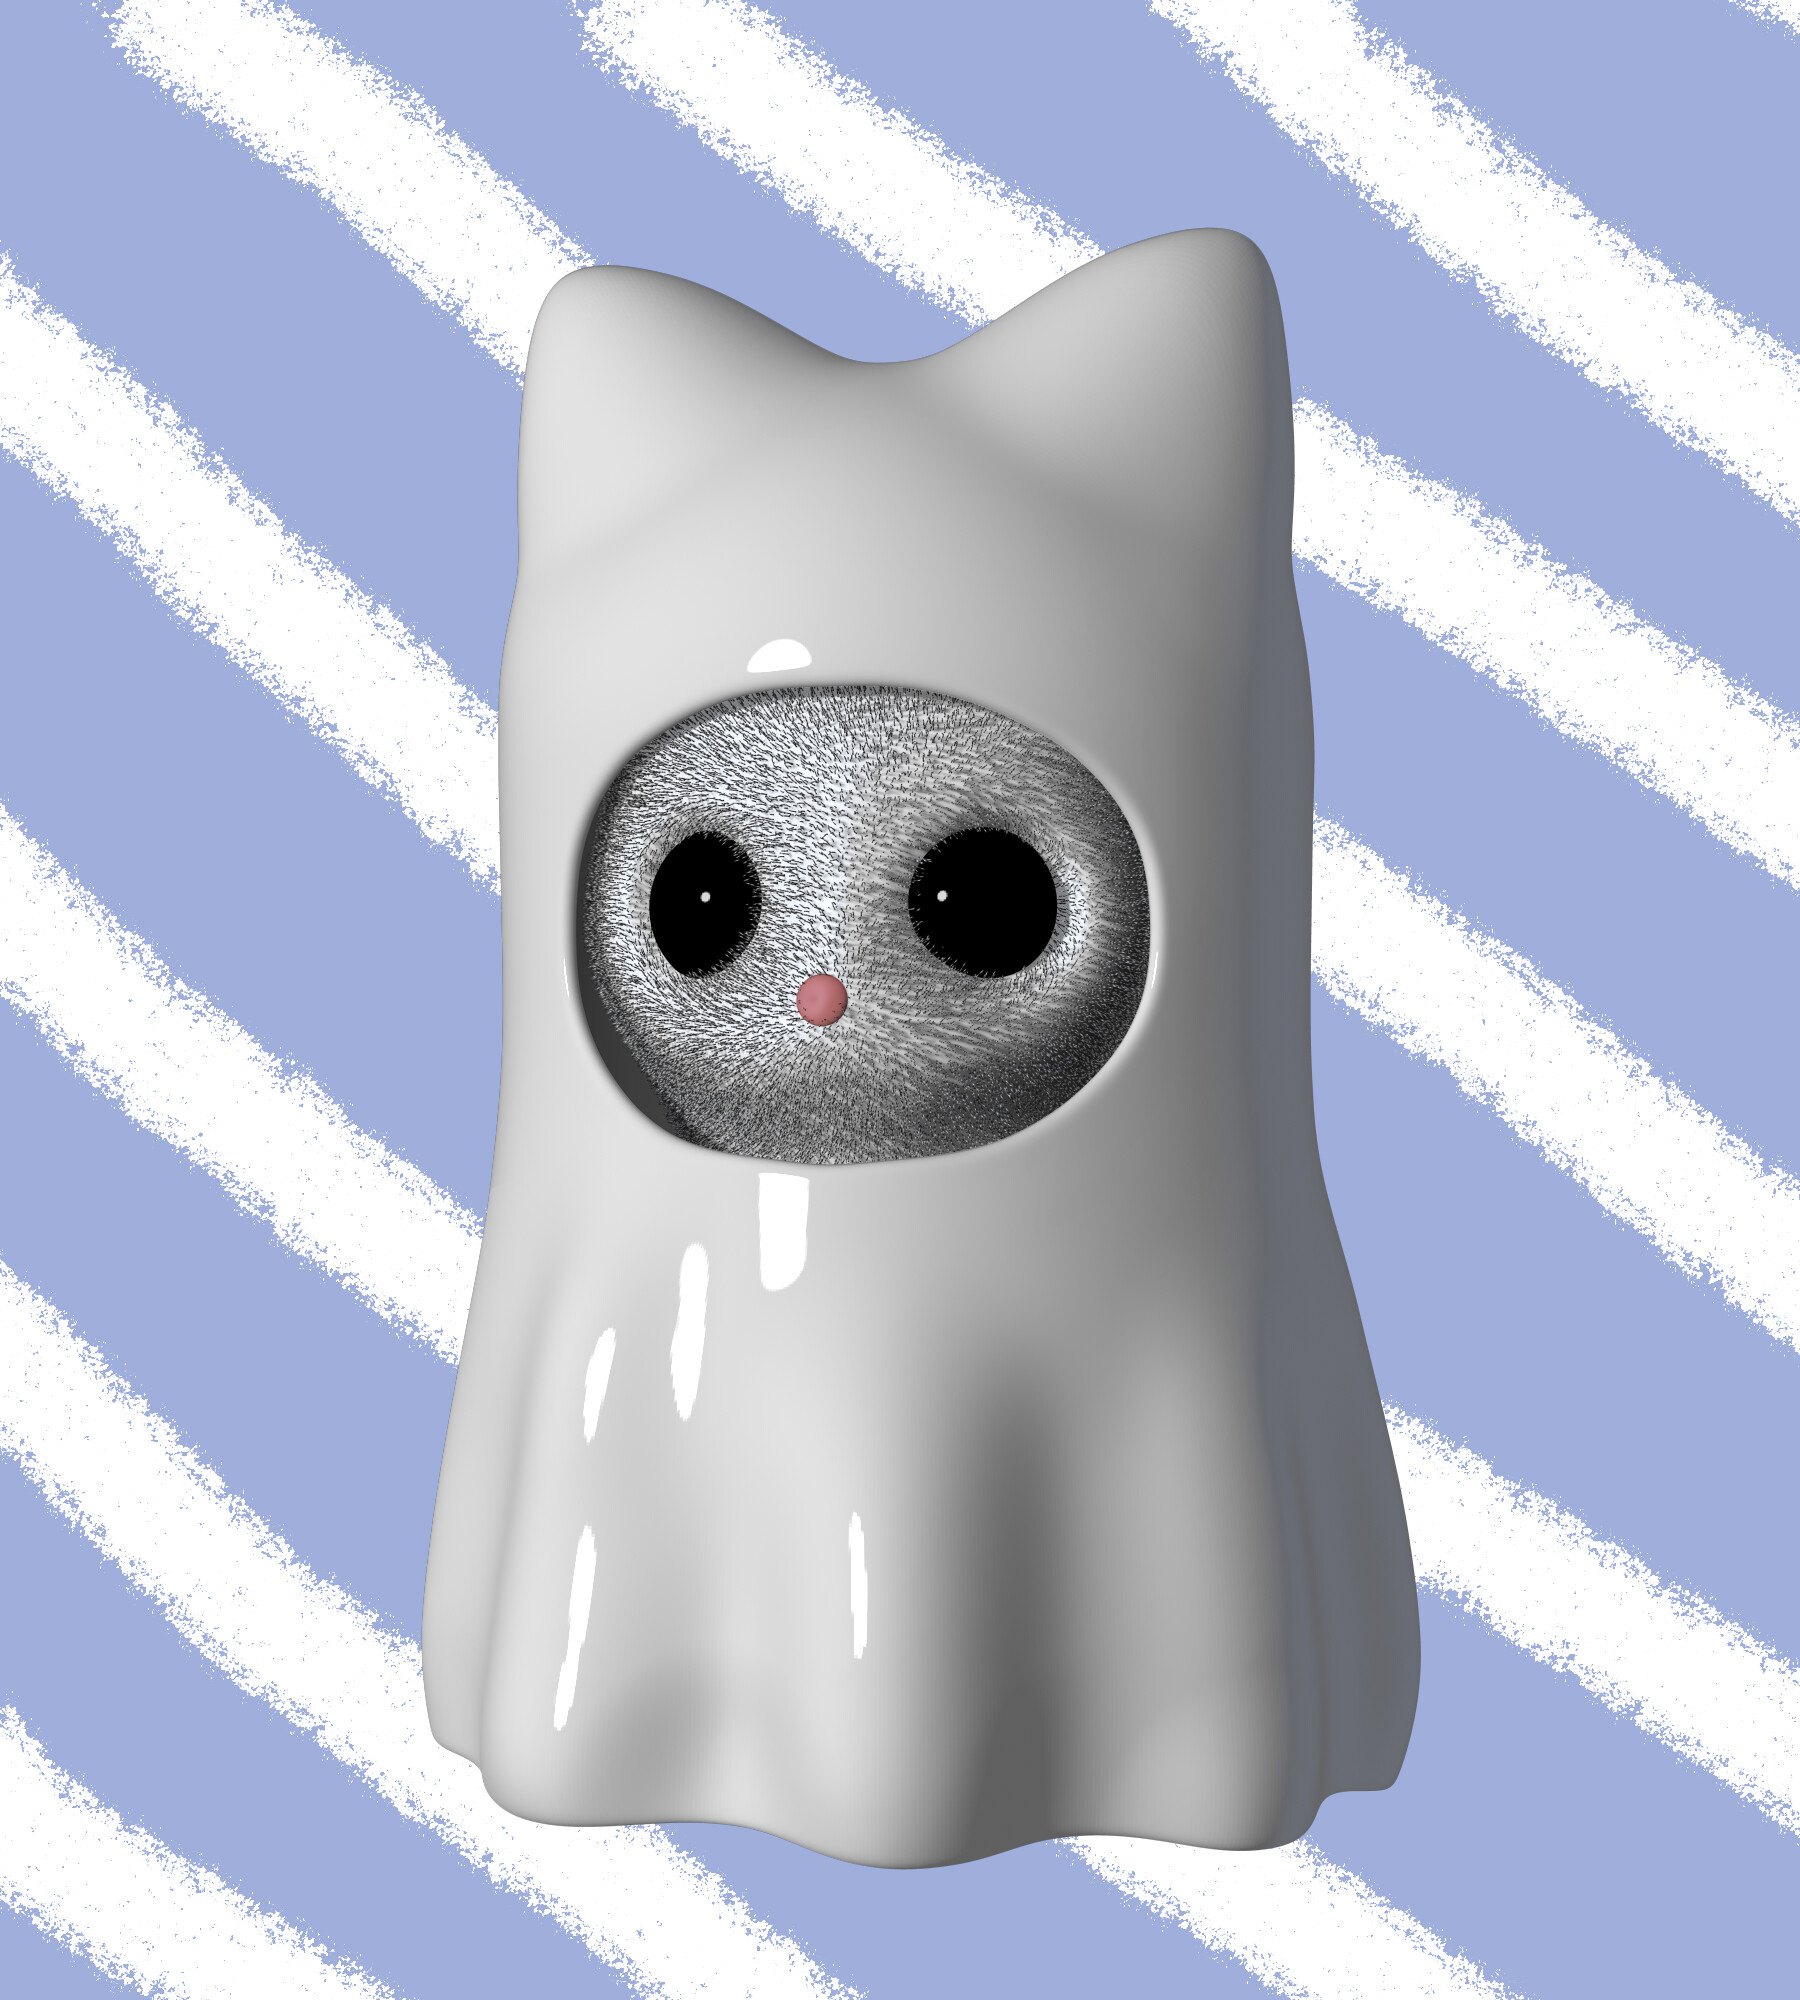 ArtStation - Ghost Cat